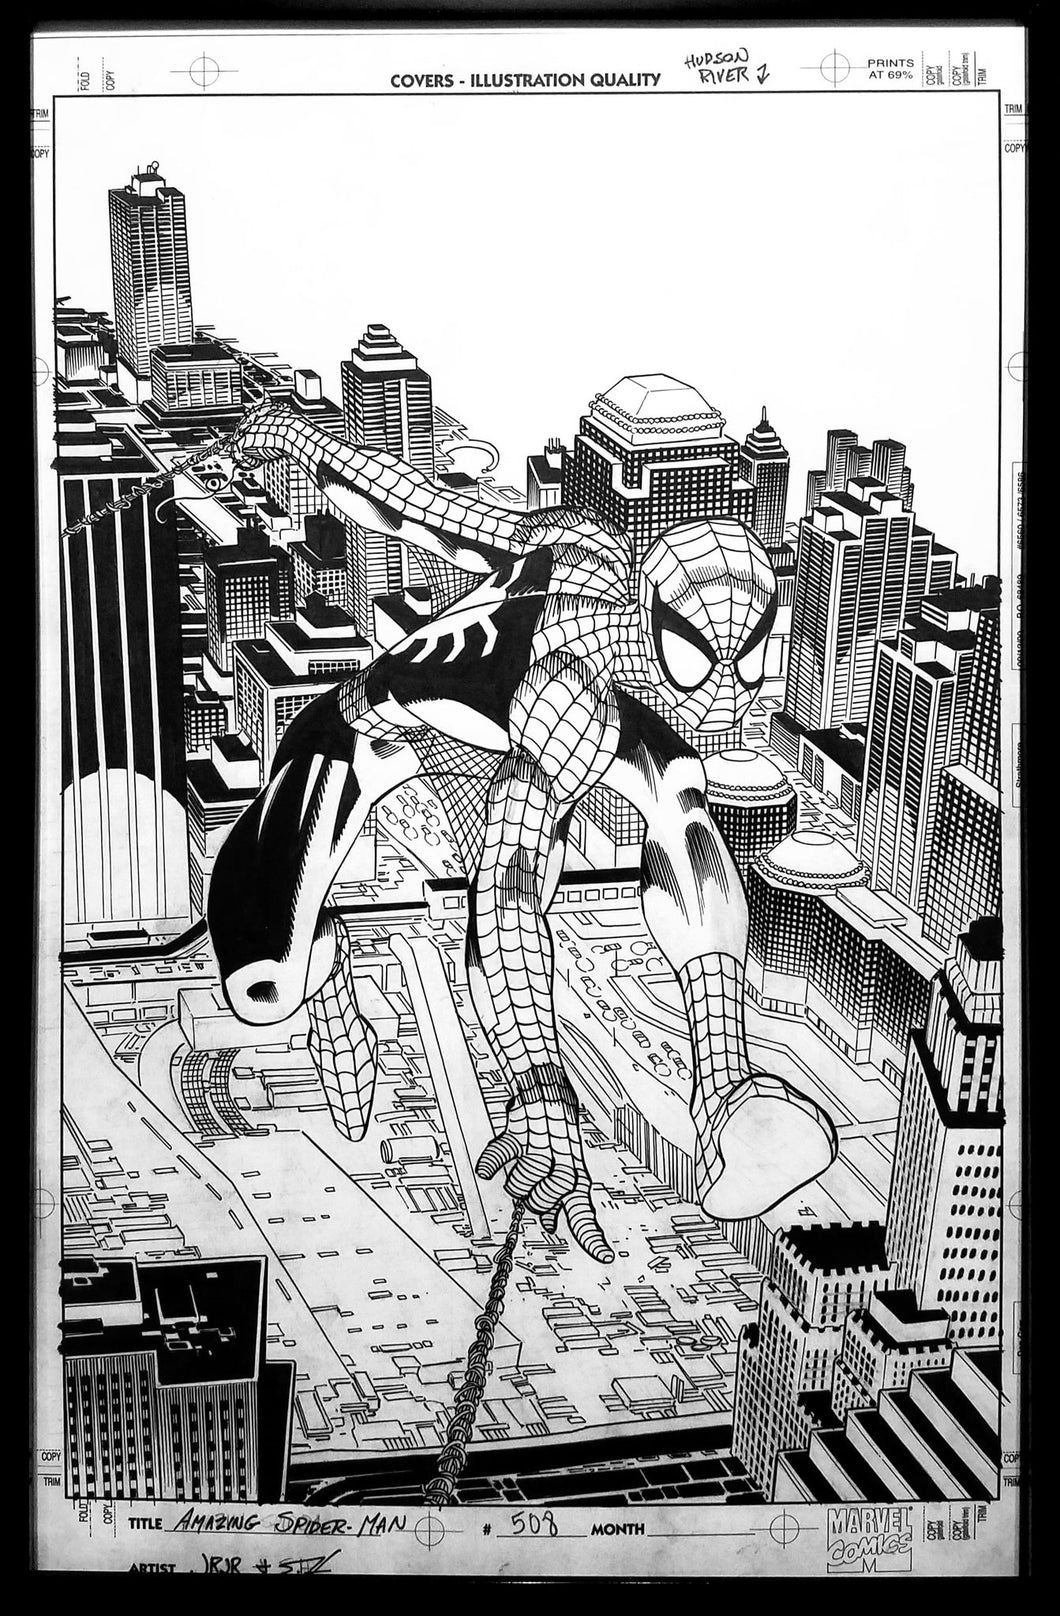 Amazing Spider-Man #508 John Romita Jr. 11x17 FRAMED Original Art Poster Marvel Comics